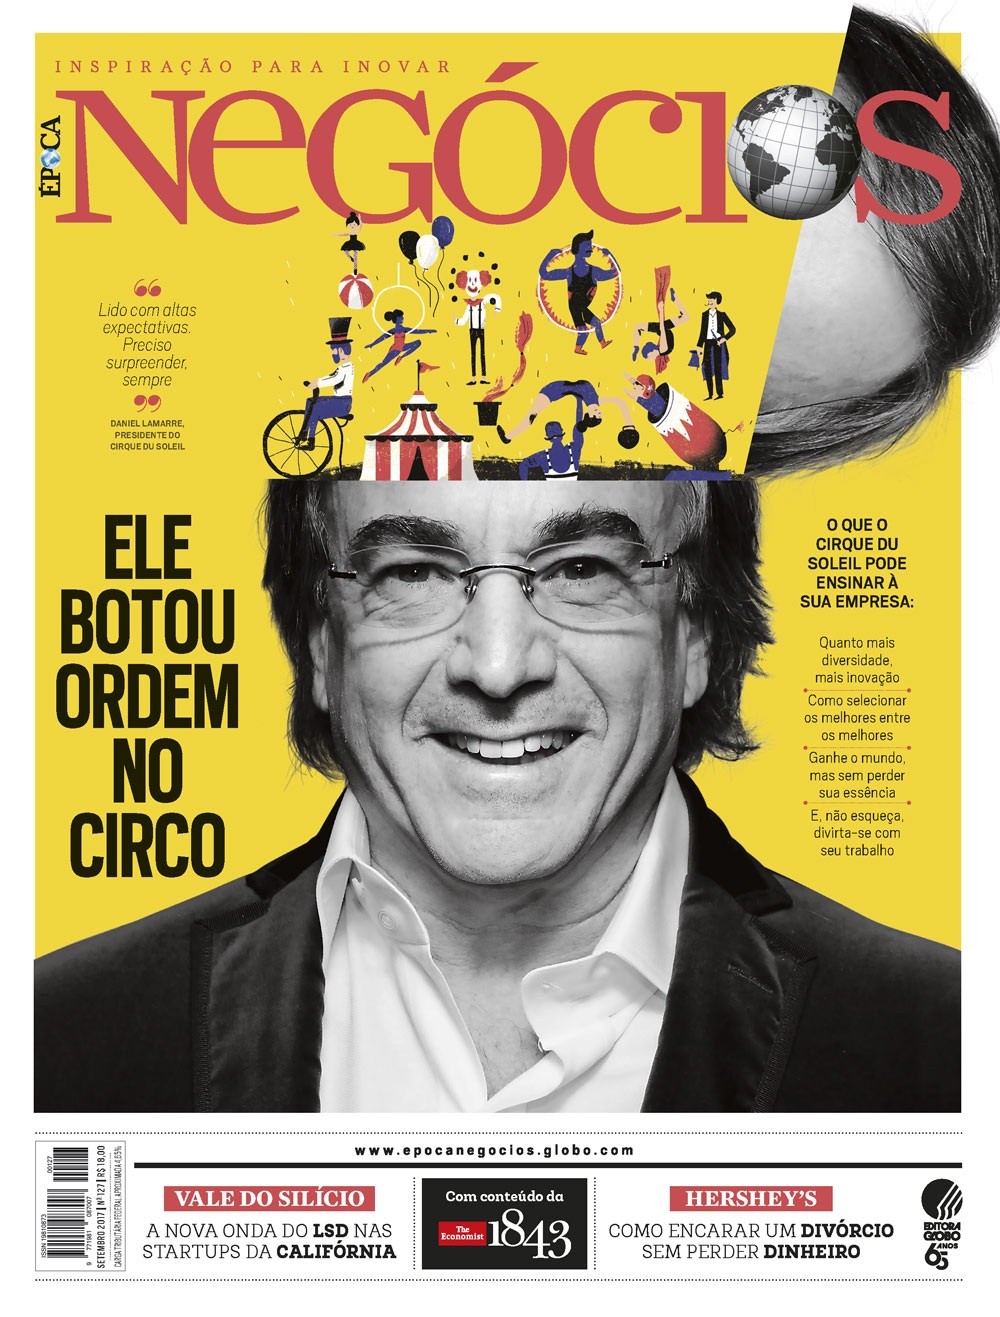 Em anúncio patrocinado do Cirque du Soleil, Bradesco apresenta nova marca -  05/11/2018 - UOL Economia